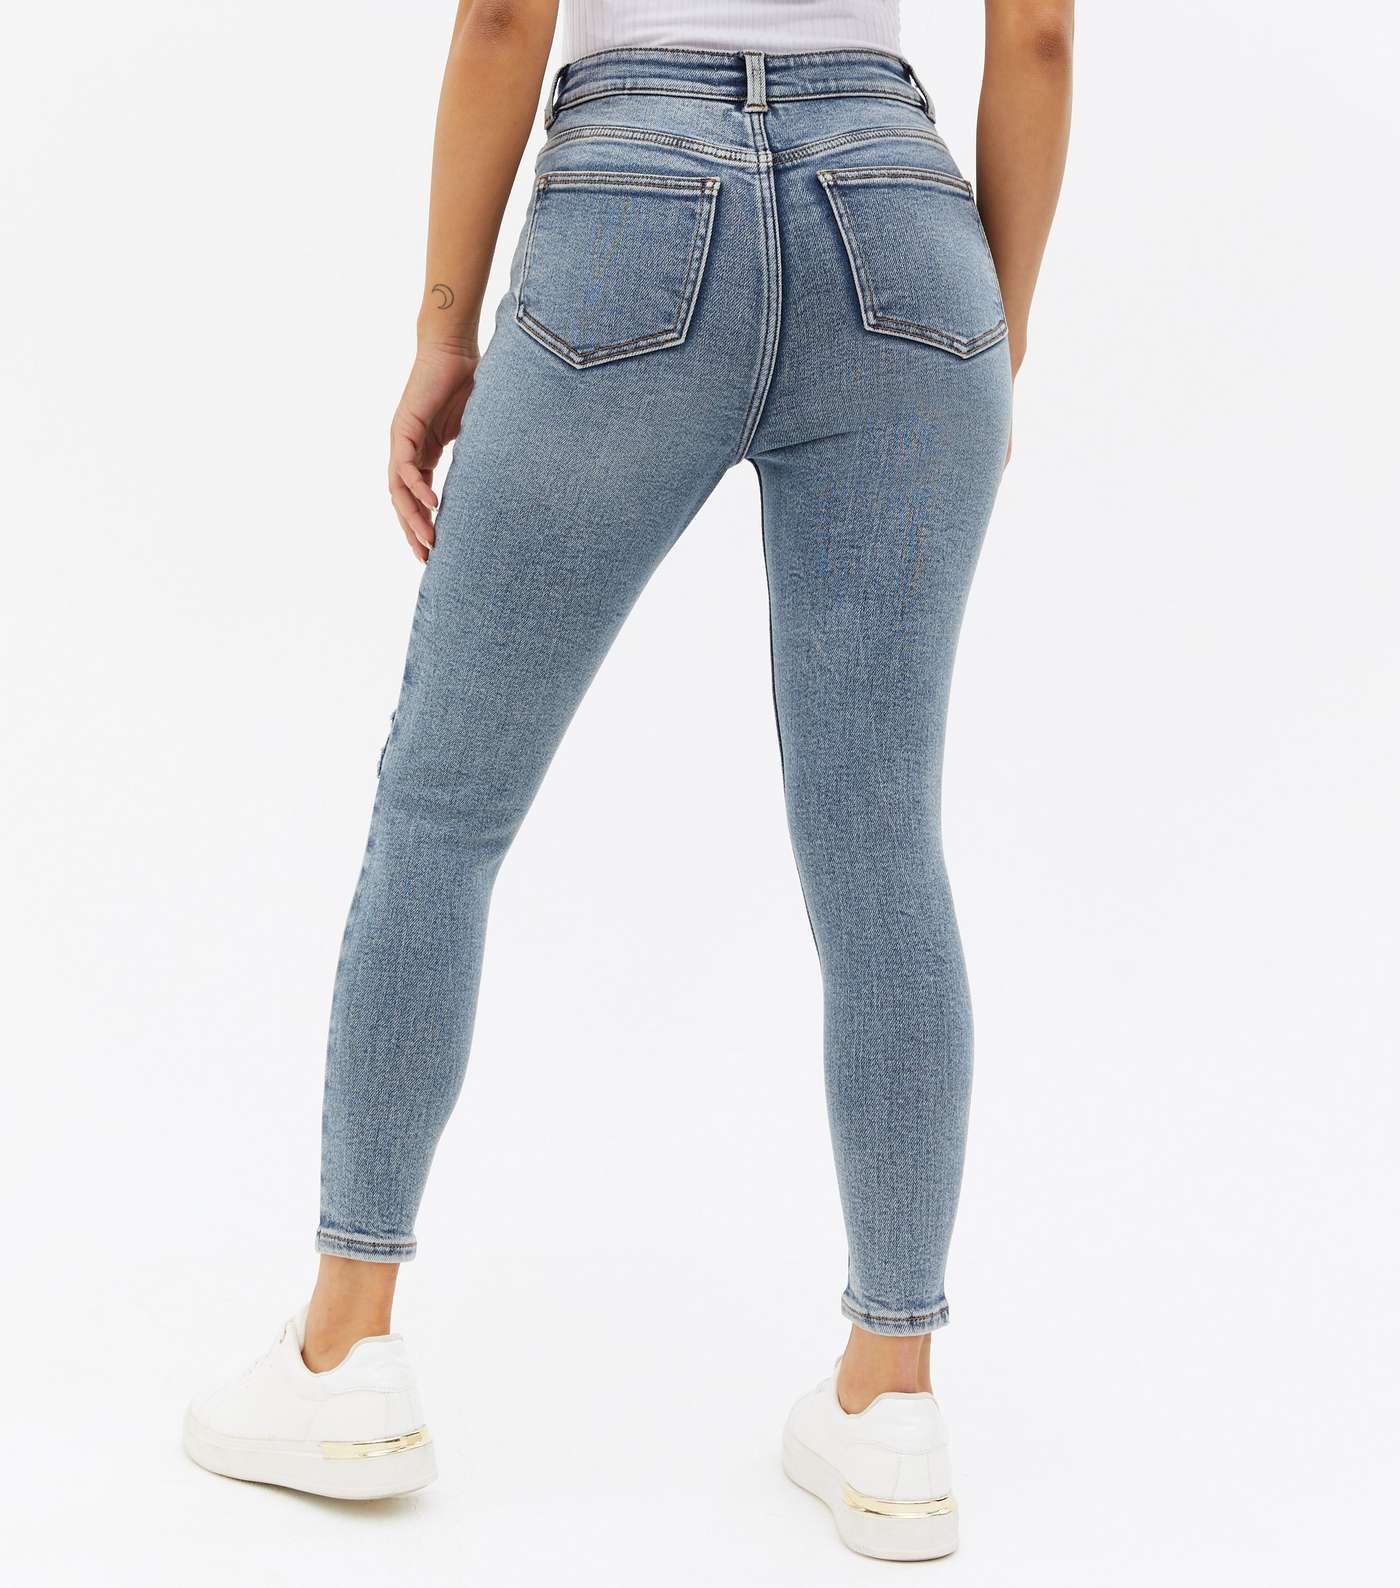 Petite Teal High Waist Hallie Super Skinny Jeans Image 4